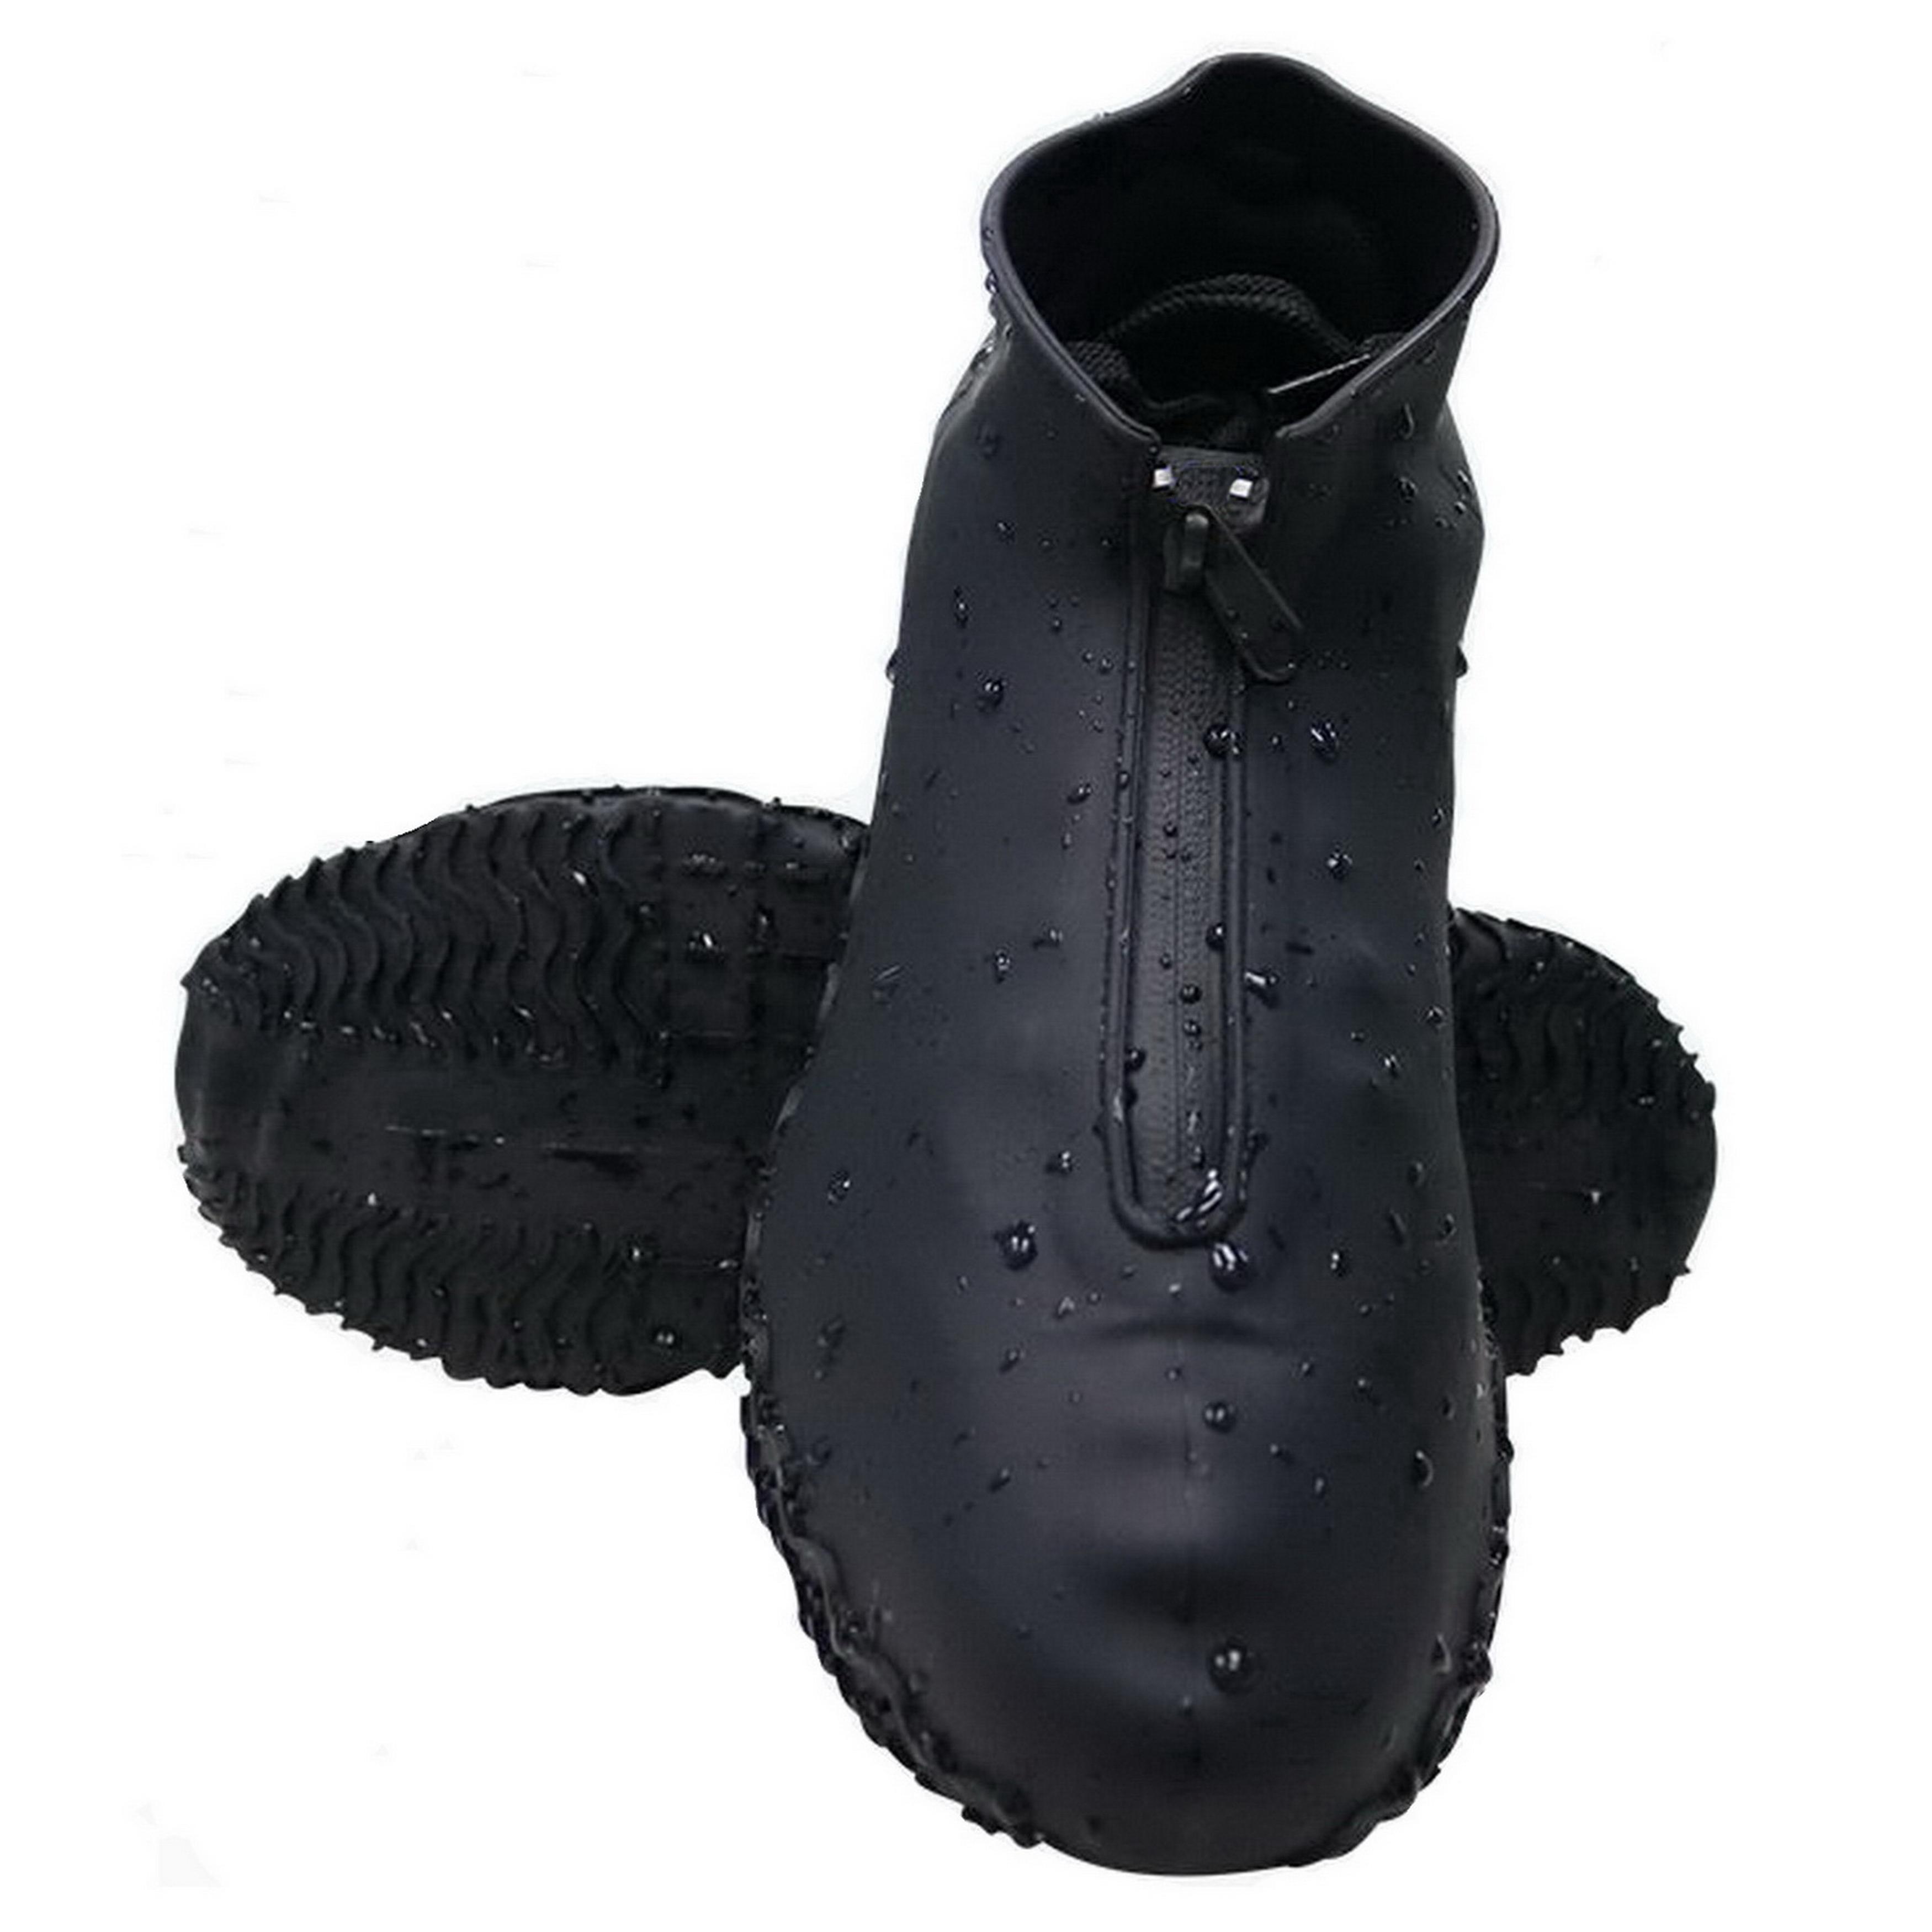 Фото 2 Cиликоновые чехлы-бахилы для обуви с молнией M 38-41 CG WSS2 Black